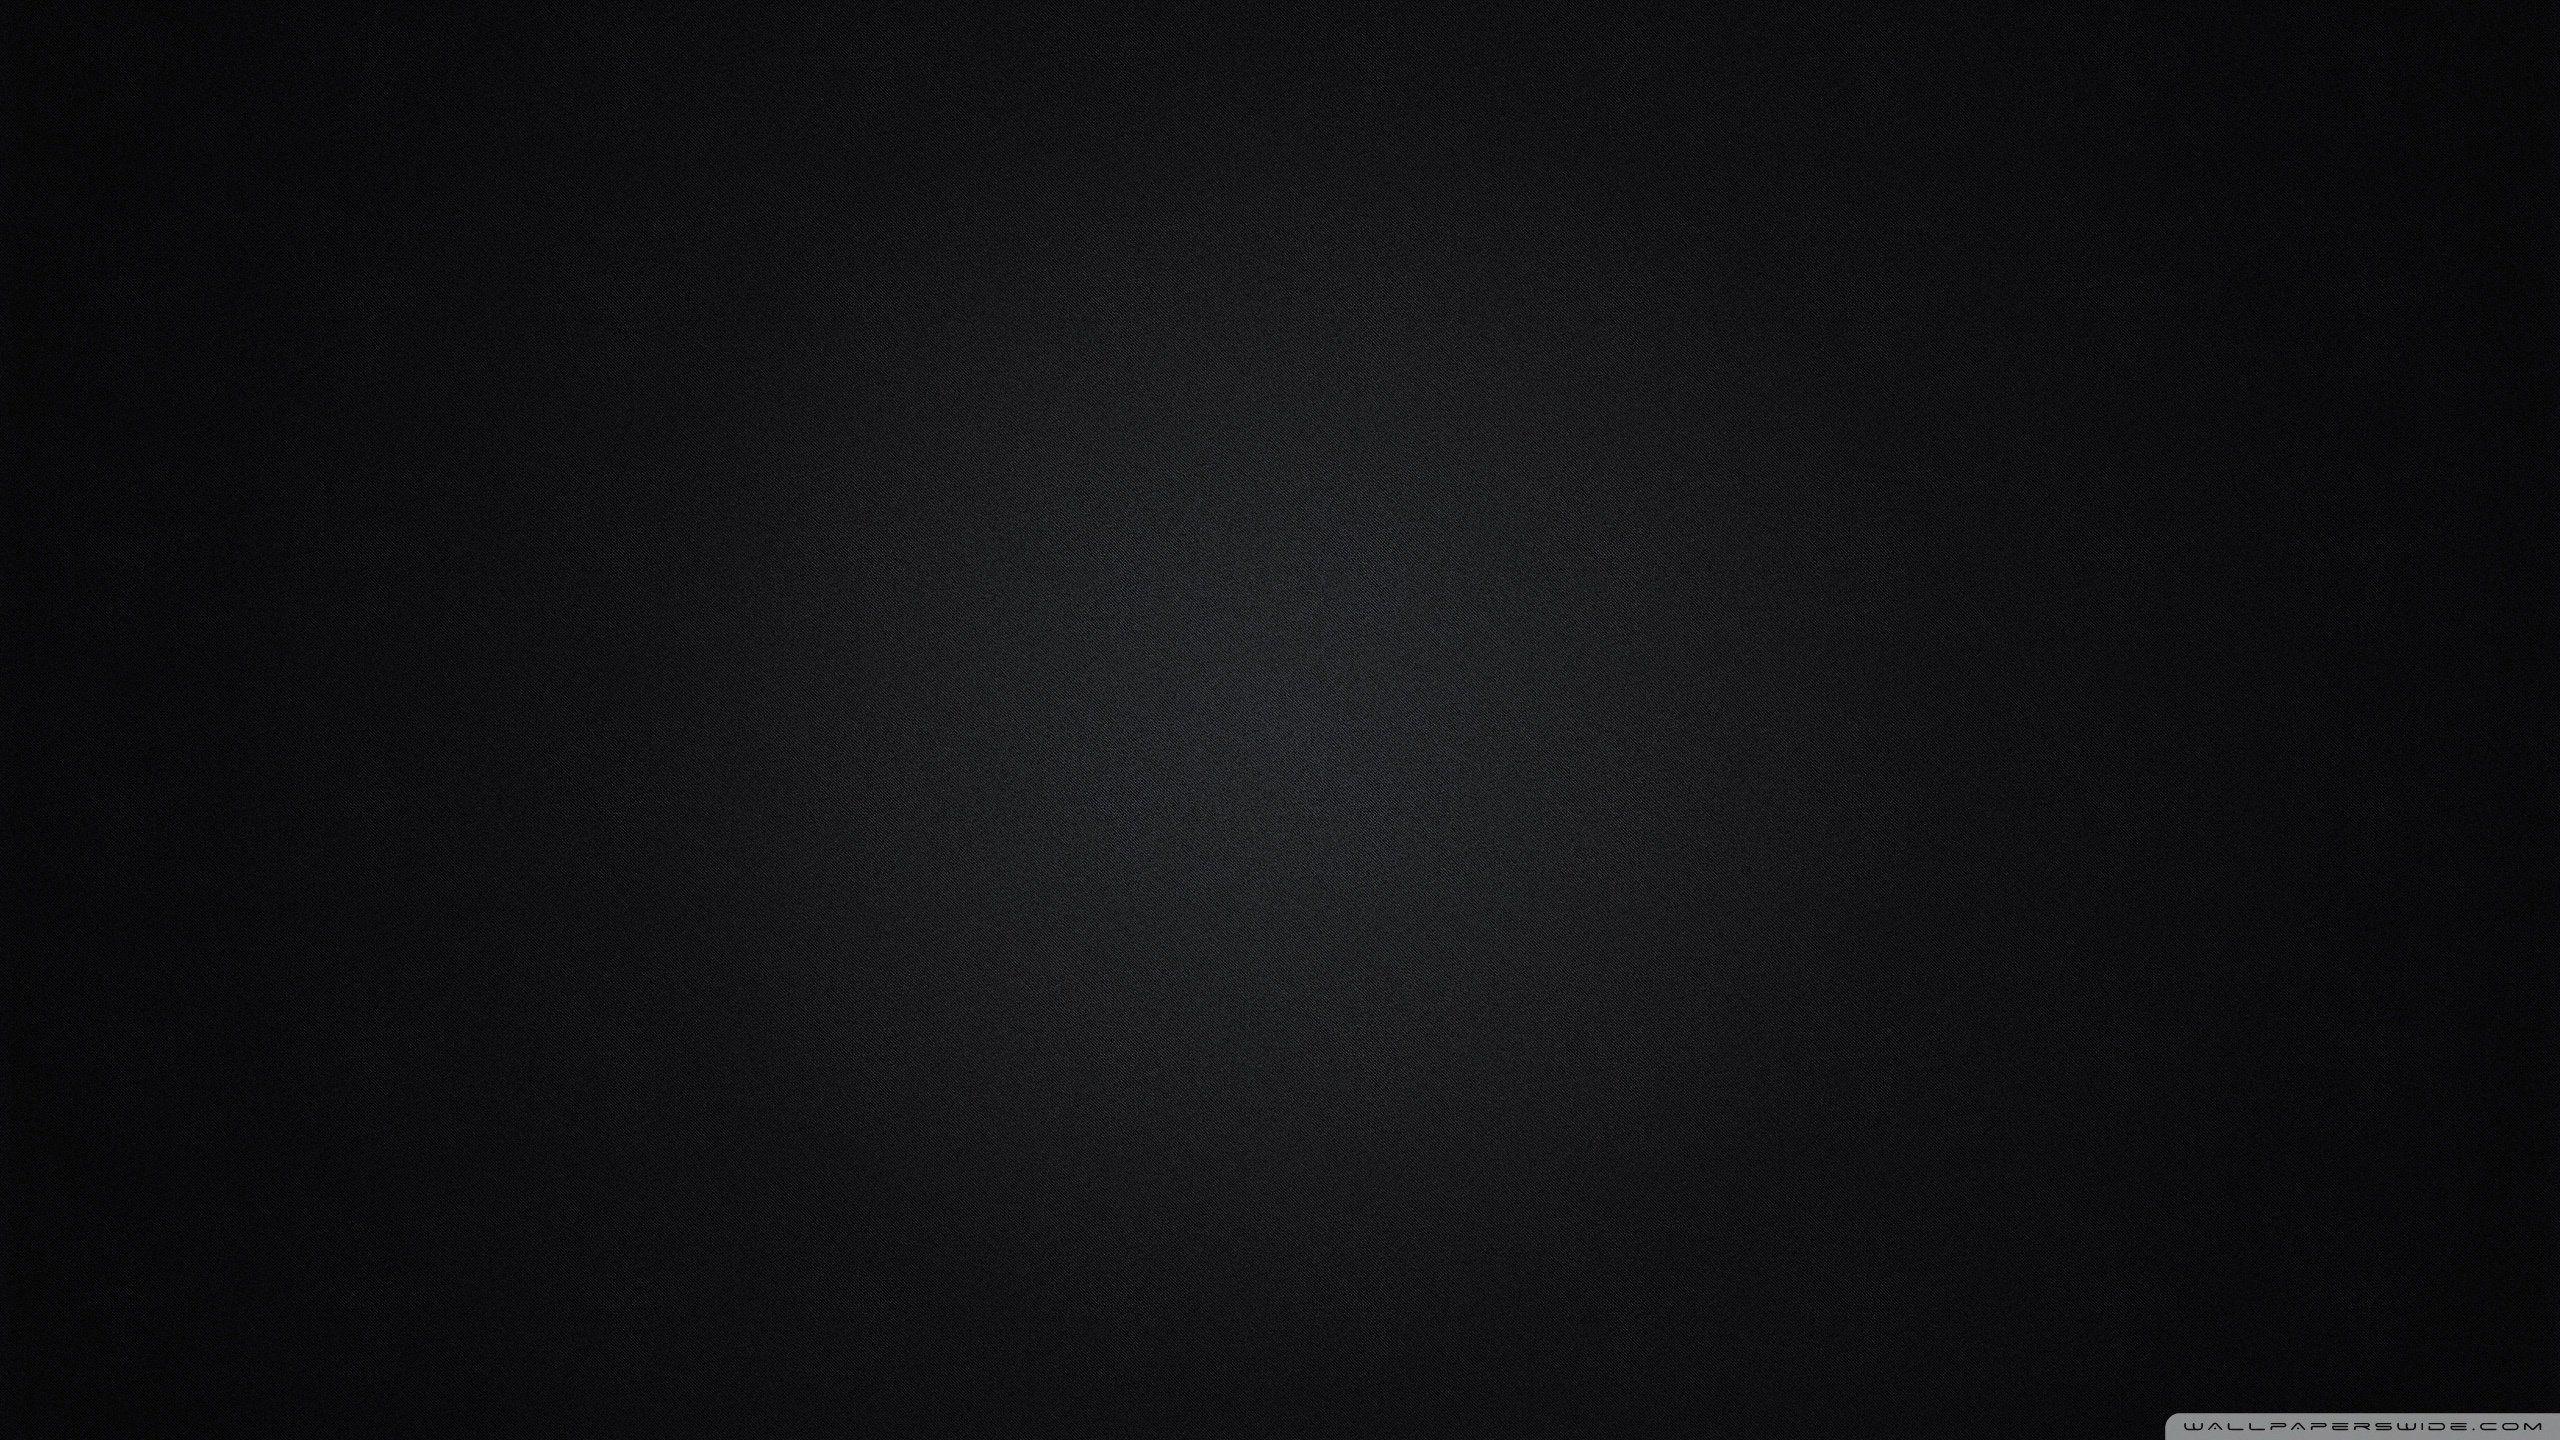 Hình nền đen cho máy tính 1280x720 sẽ tạo nên sự đẳng cấp và quyền lực cho chiếc máy tính của bạn. Với nền đen đầy chuyên nghiệp này, bạn có thể thể hiện vẻ ngoài thanh lịch của chính mình. Hãy cùng trang trí cho máy tính của mình một bức hình đen đầy tinh tế và hiện đại.